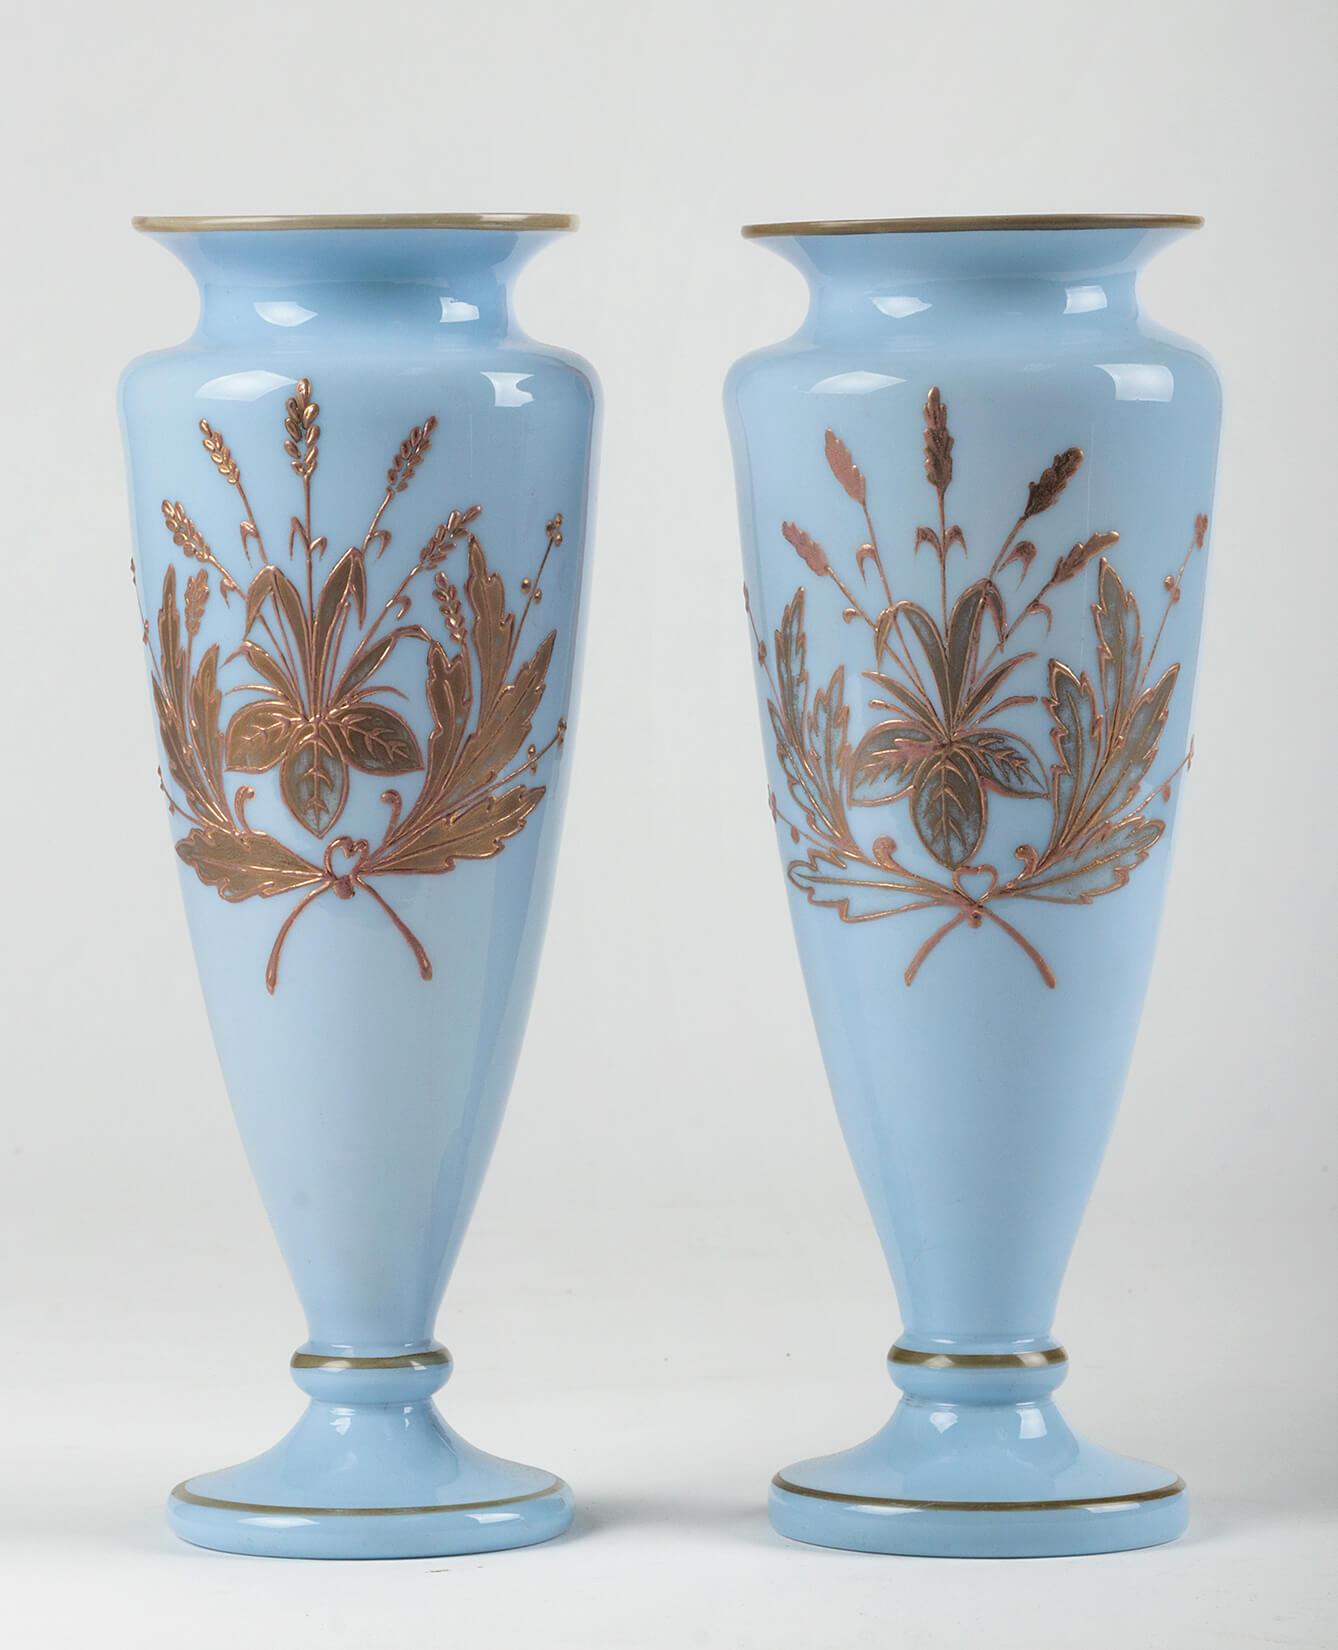 Ein schönes Paar antiker Vasen. Hergestellt aus Opalglas, in einer besonderen Farbe, die zwischen violett-lila und himmelblau liegt. Die Vasen sind handbemalt mit einem Reliefdekor aus Goldfarbe. Die Ränder sind mit einfachen goldfarbenen Linien